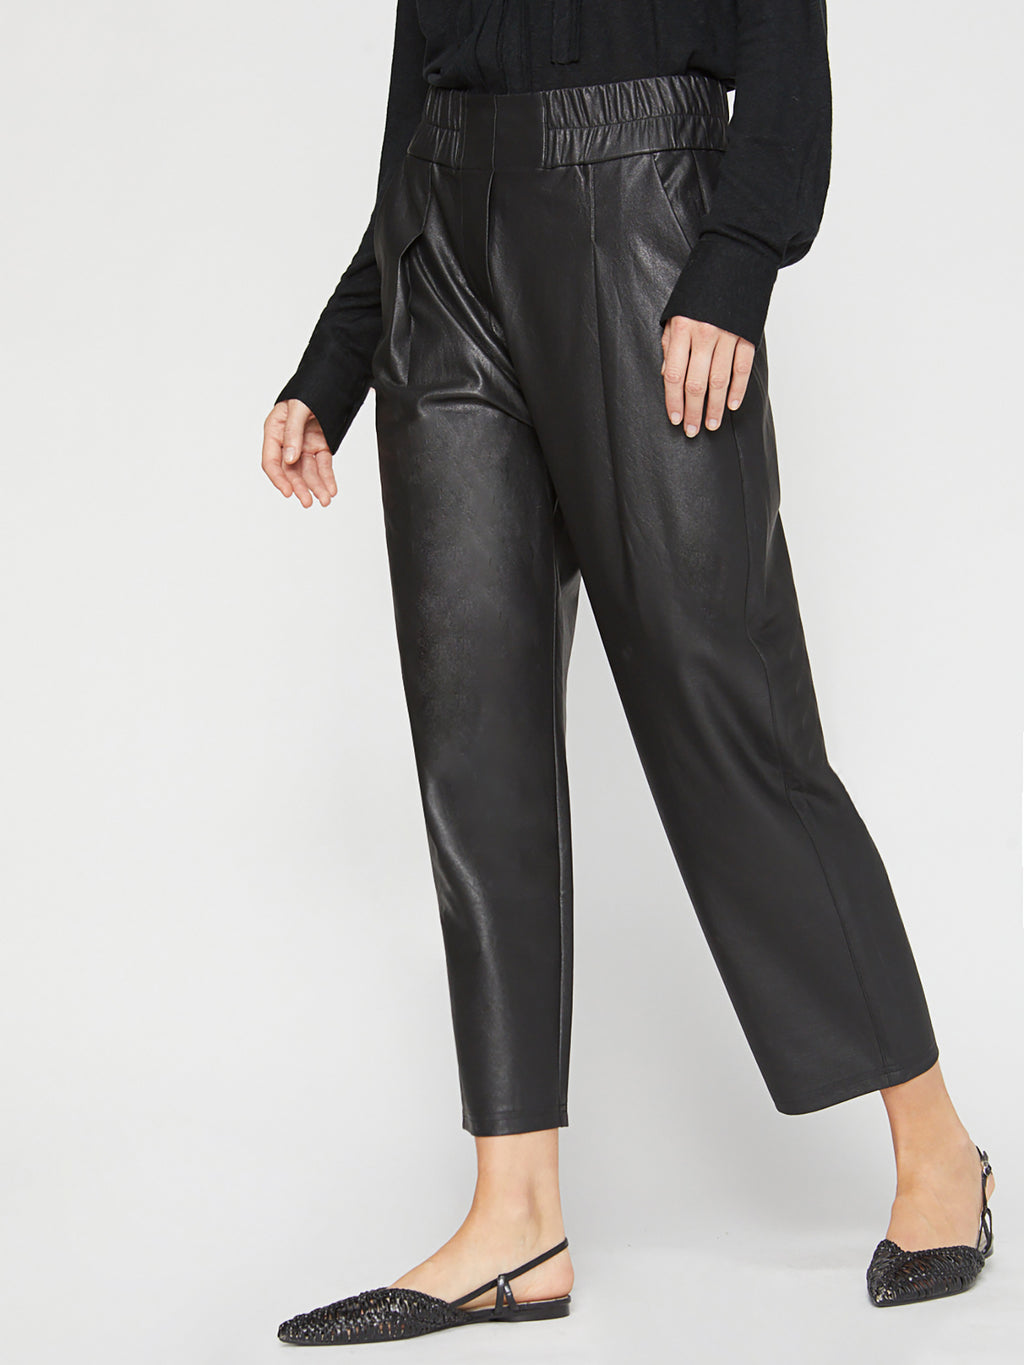 Women's Vegan Leather Fiera Pant in Black Onyx